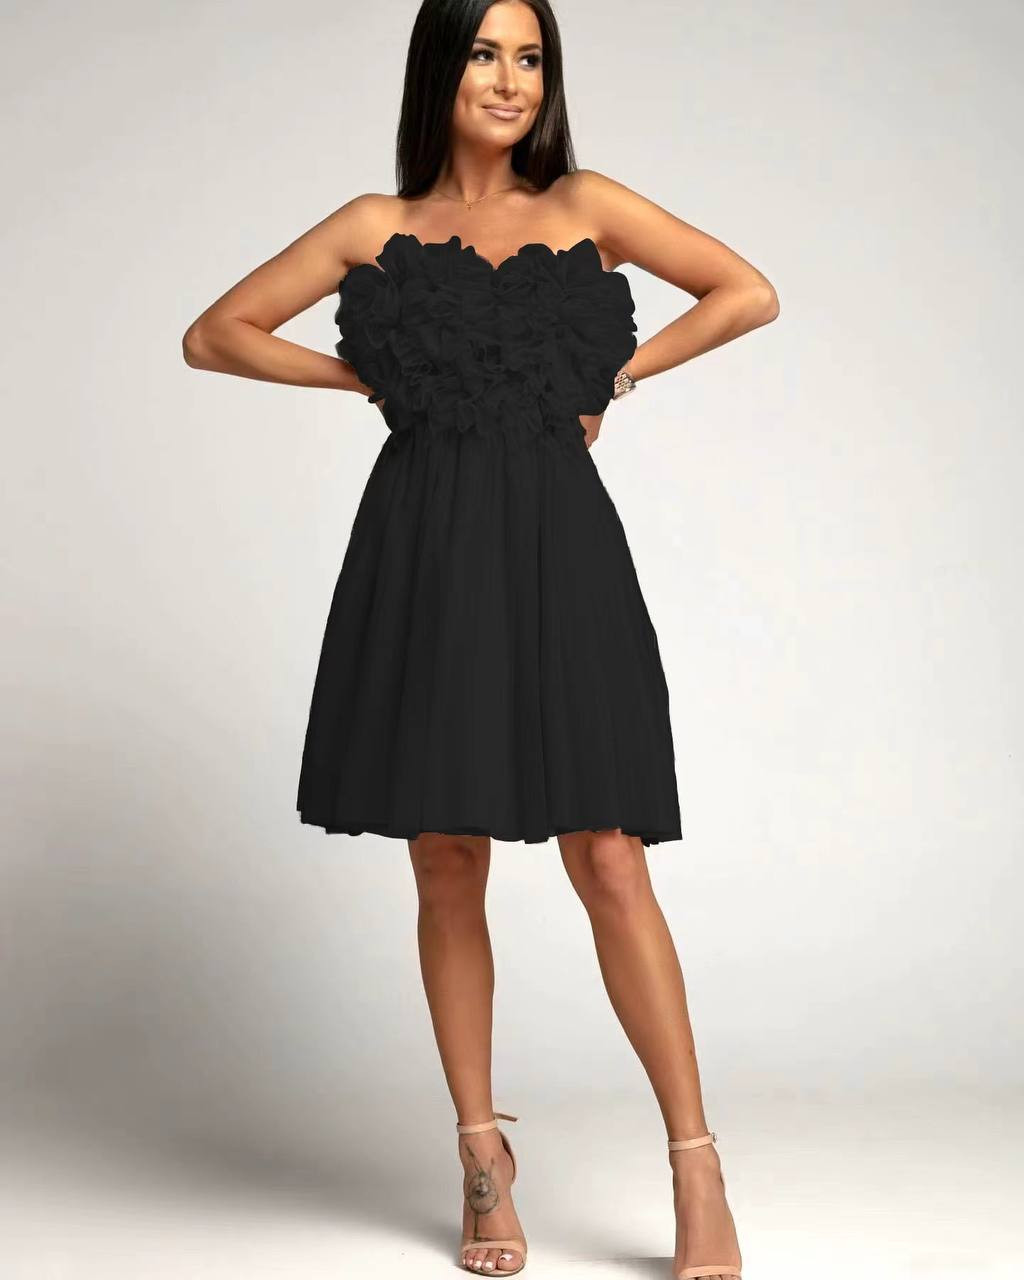 Γυναικείο στραπλες φόρεμα 5126 μαύρο